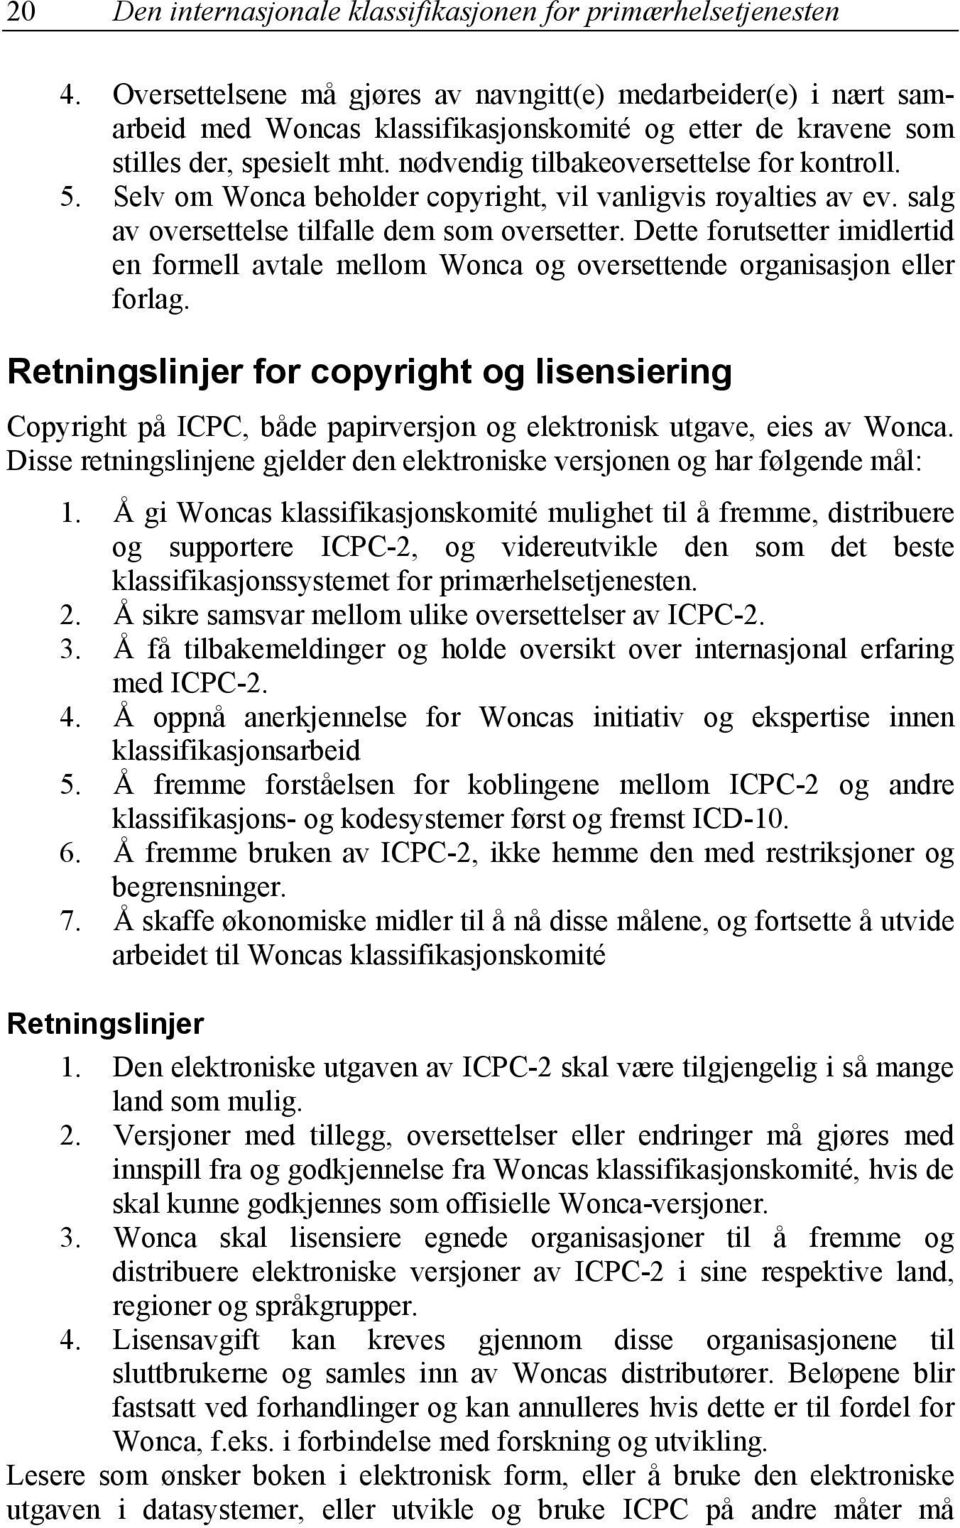 5. Selv om Wonca beholder copyright, vil vanligvis royalties av ev. salg av oversettelse tilfalle dem som oversetter.